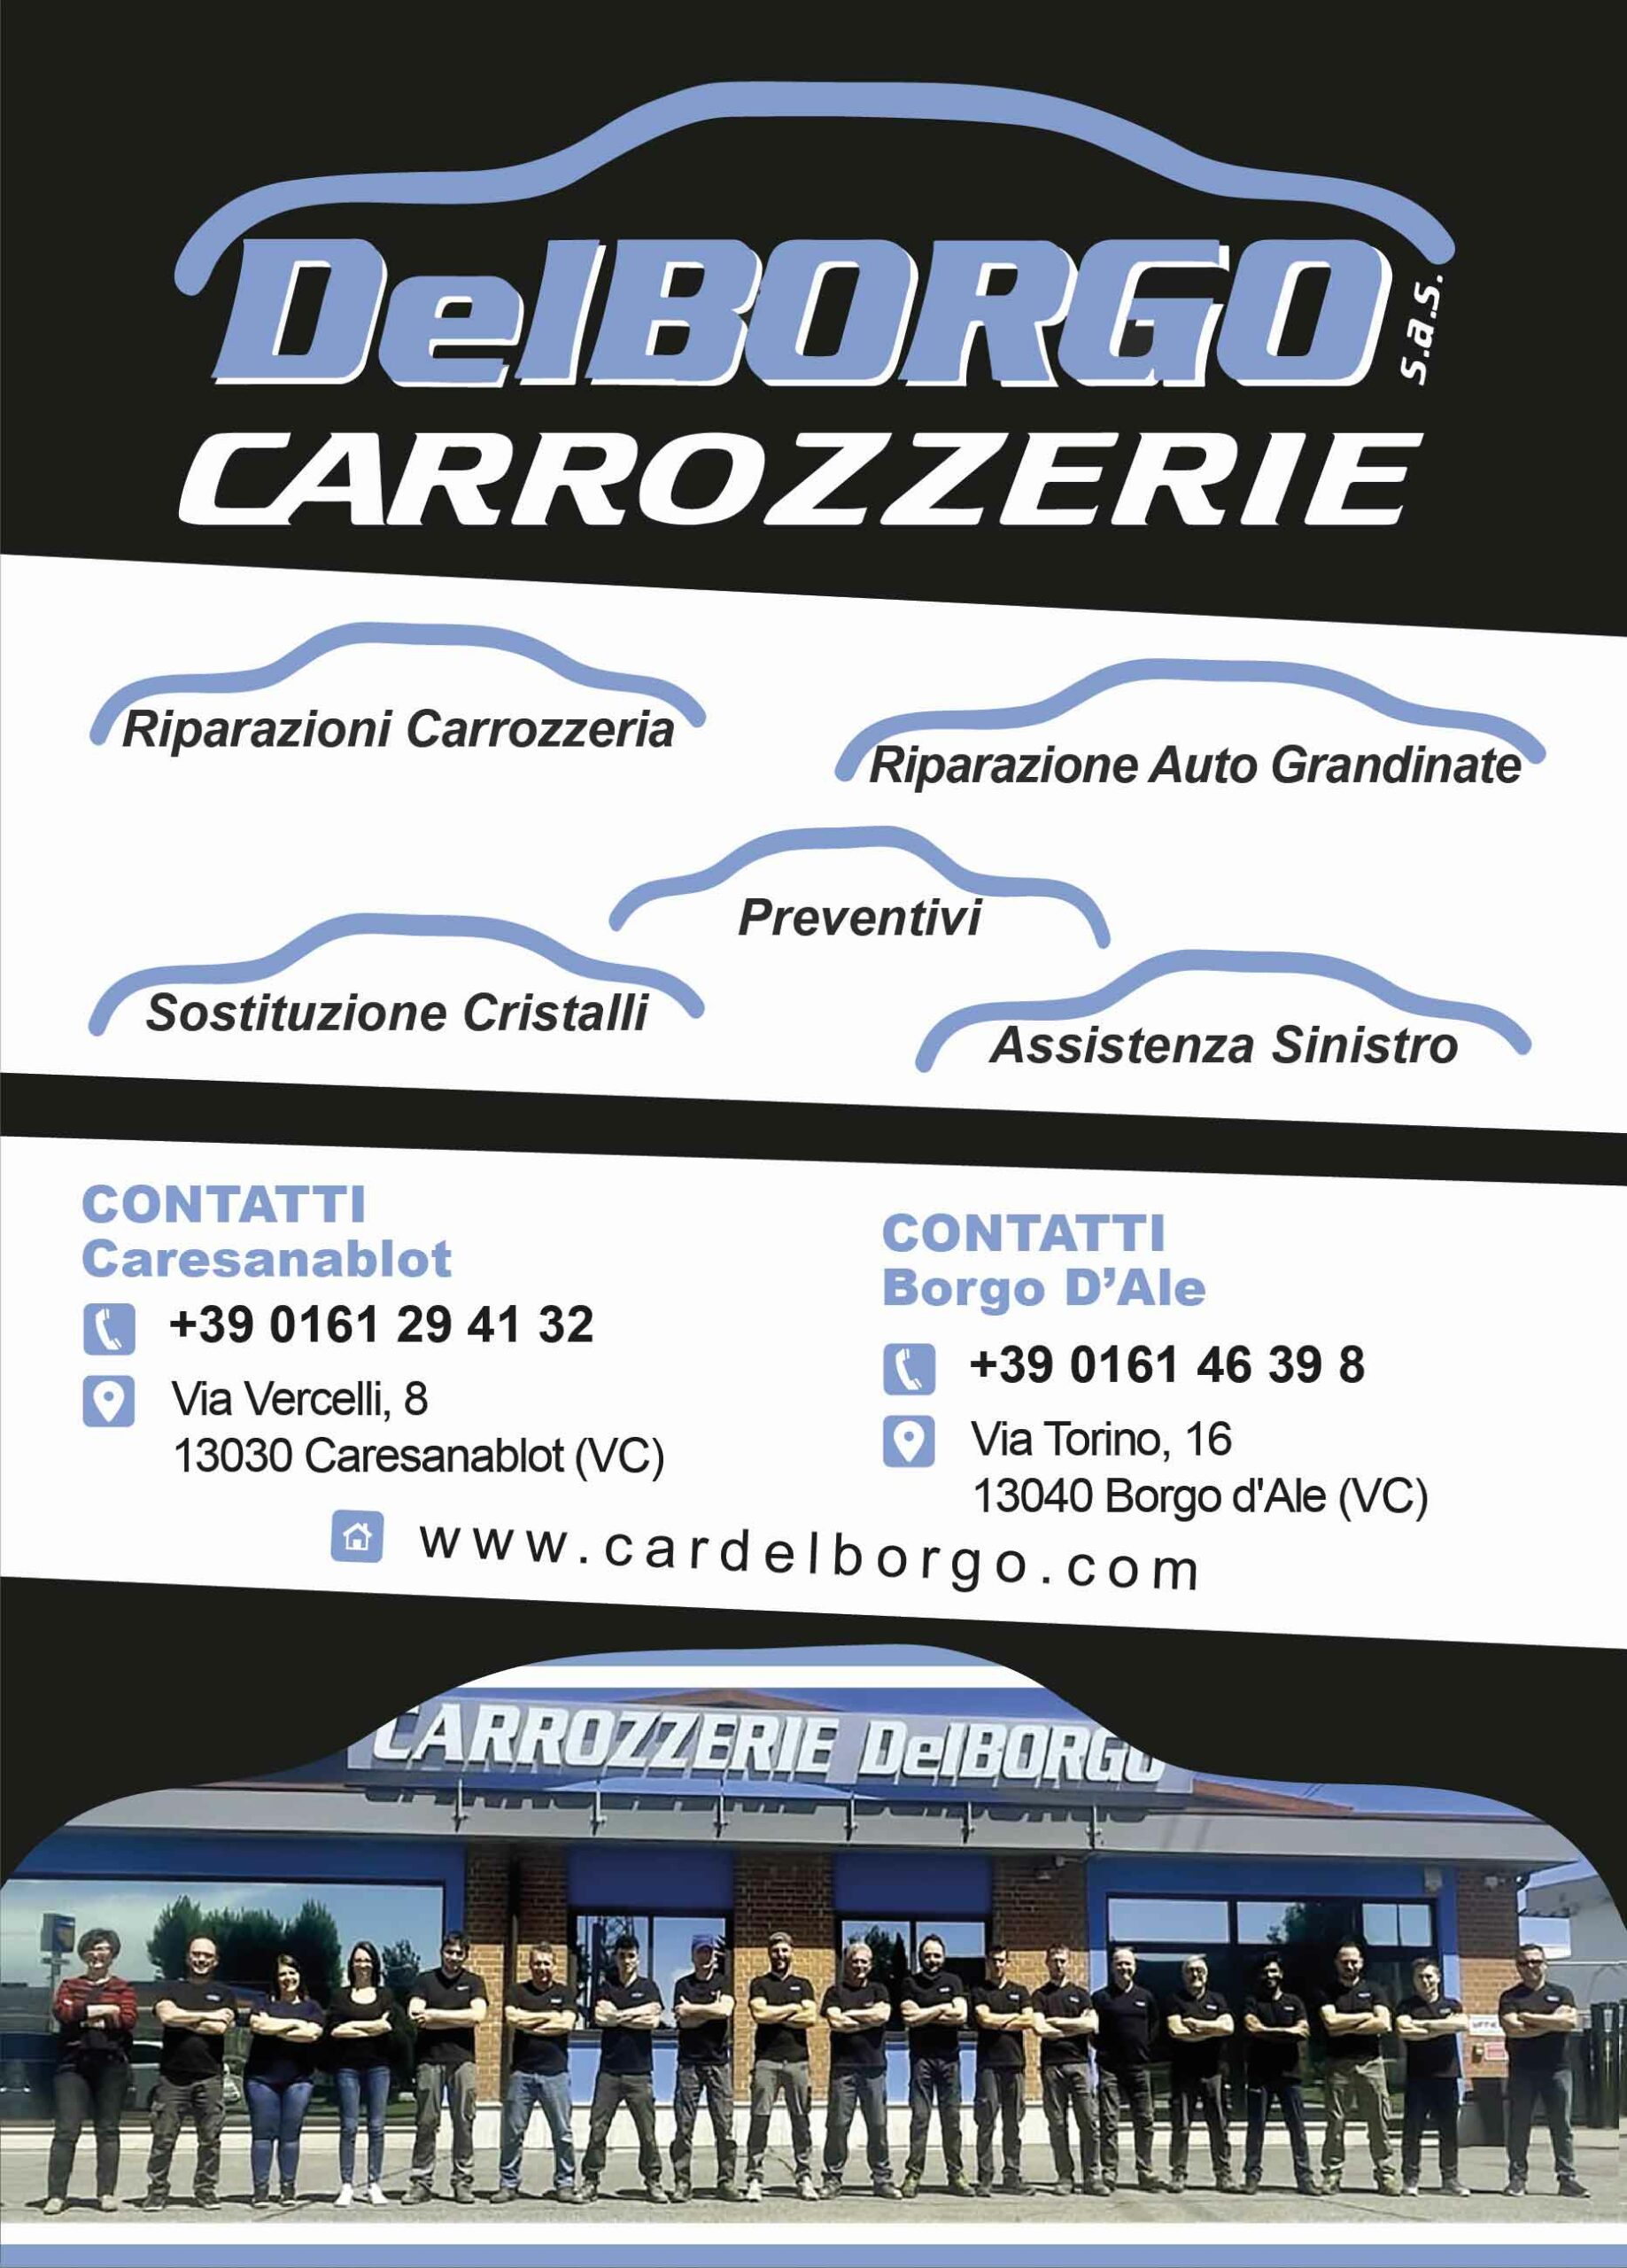 Volantino: Carrozzerie Del Borgo | Logo della carrozzeria con lista dei servizi erogati, principali contatti e foto sede Caresanablot (VC)